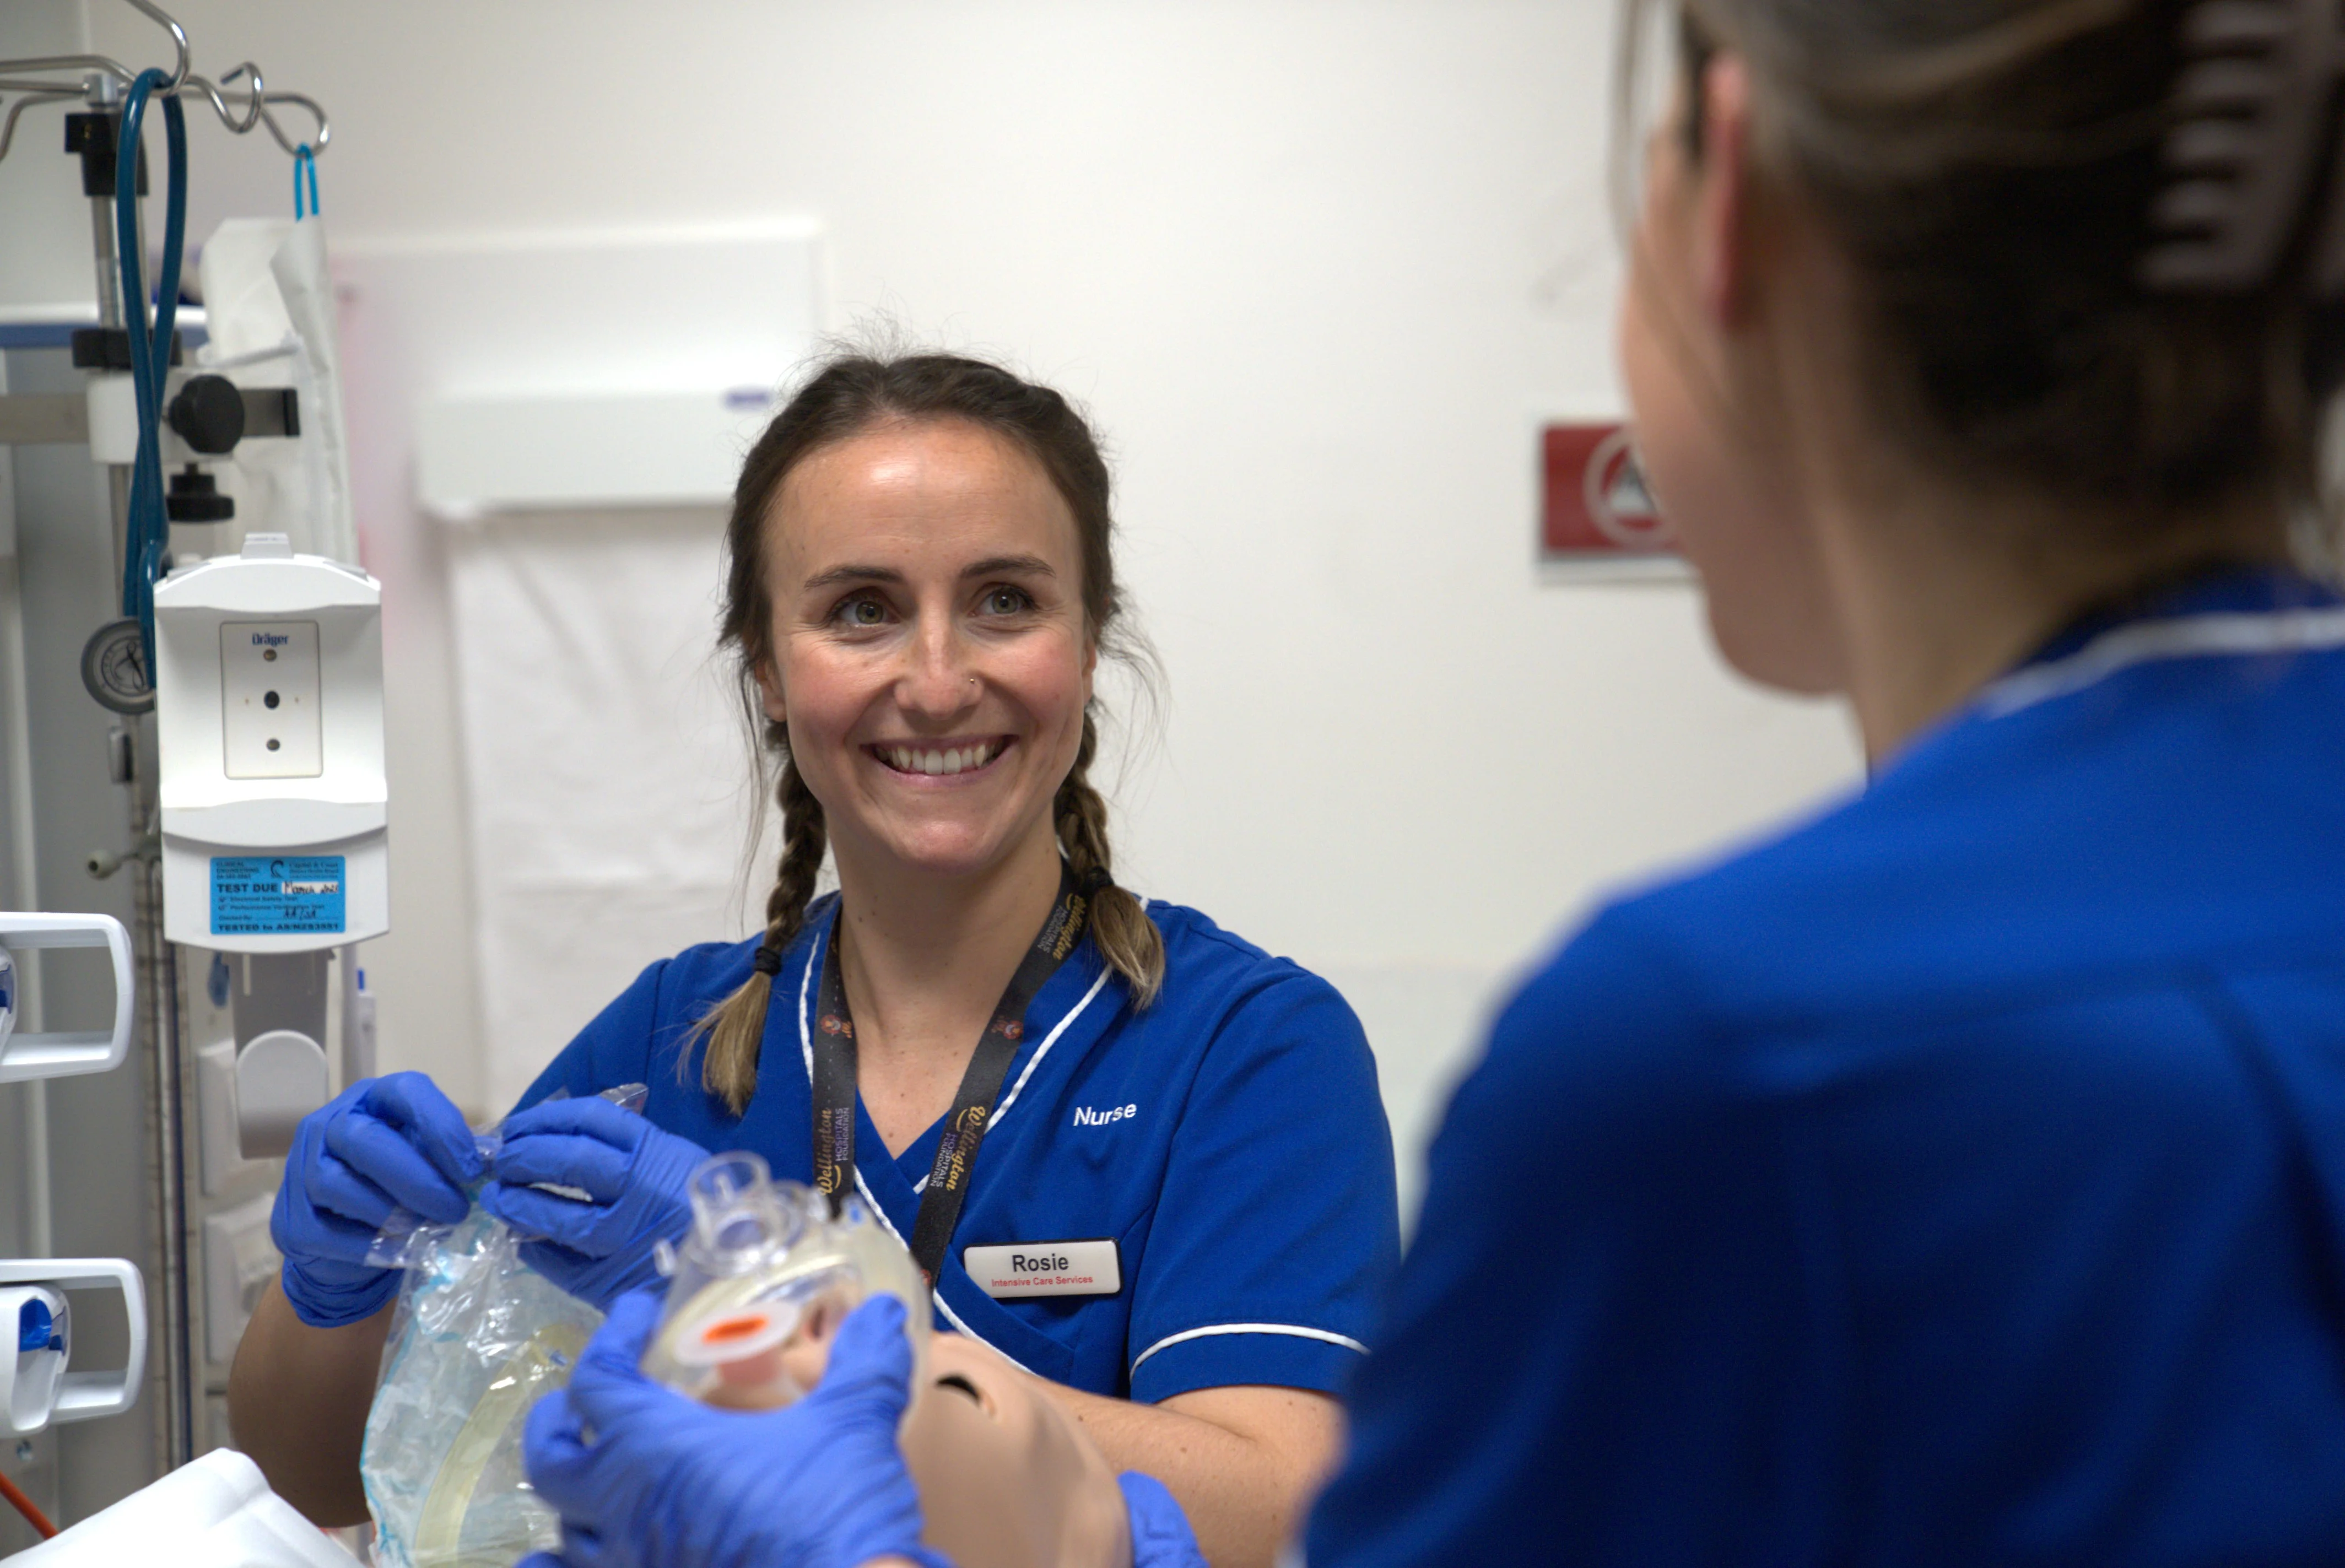 Rosie - Intensive Care Services Nurse, Wellington Hospital